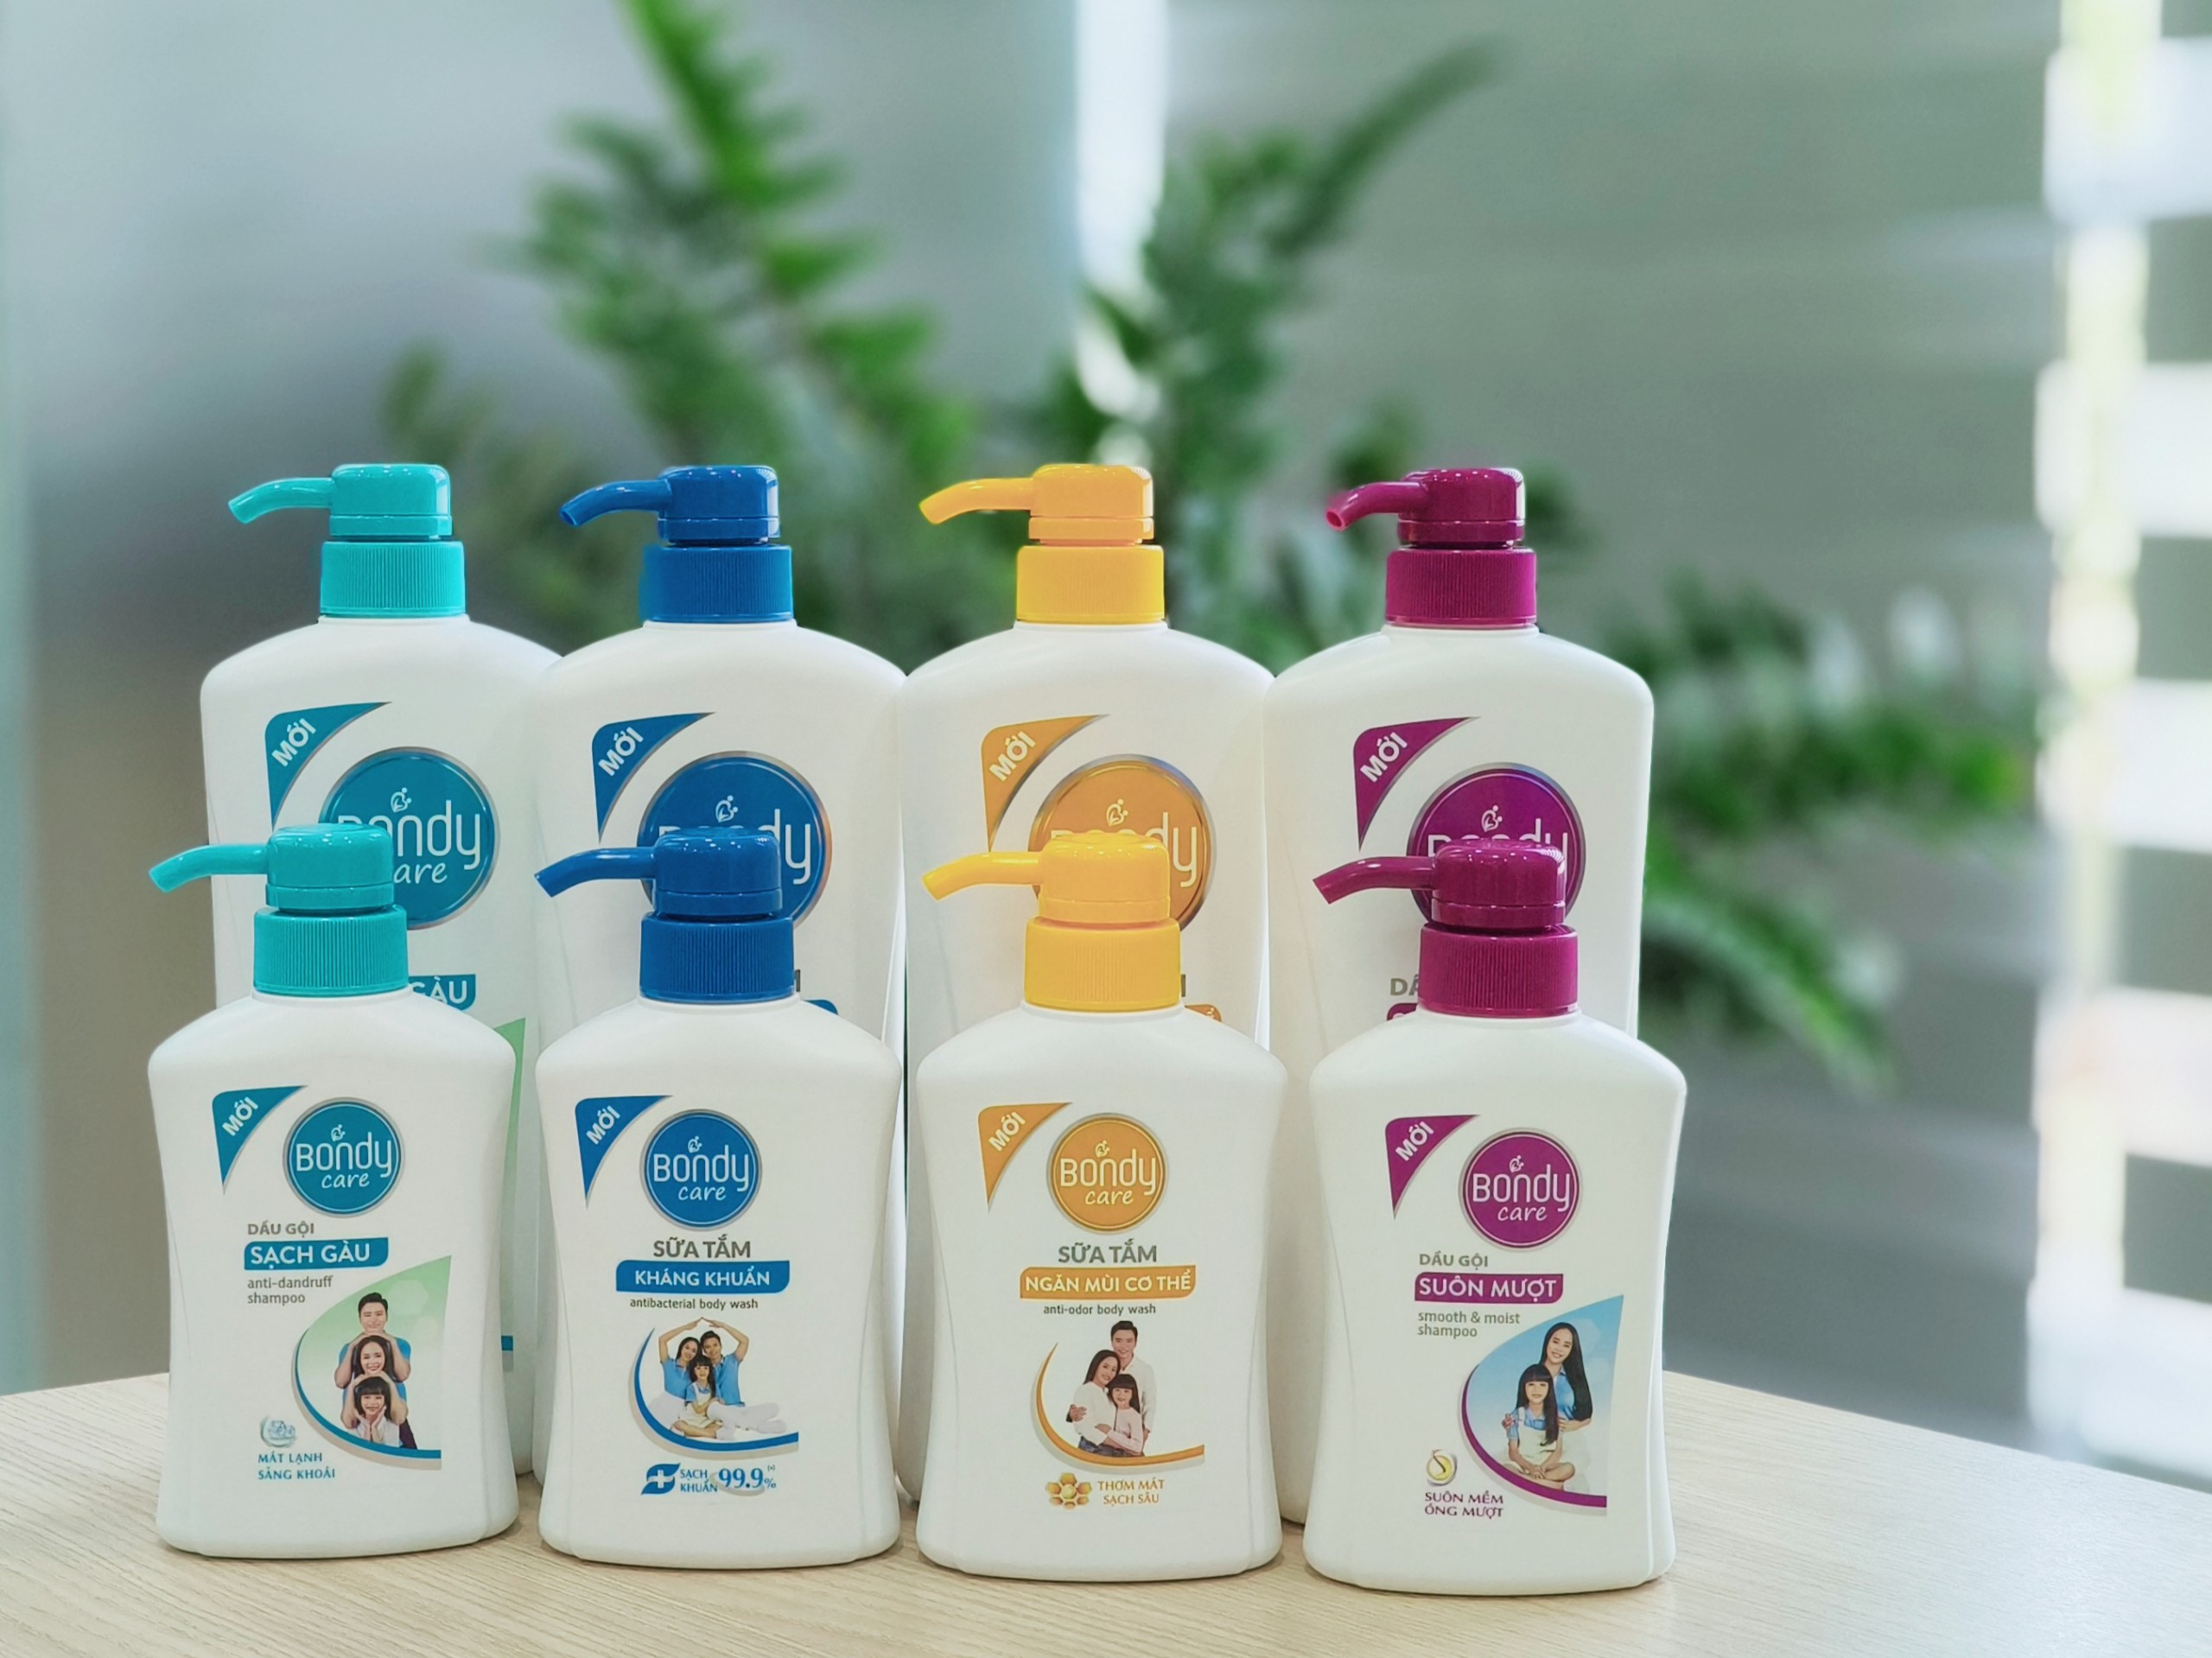 Sữa tắm ngăn mùi cơ thể Bondy Care, sữa tắm ngăn mùi lưu hương thơm tự nhiên Z0901 250g - Lixco Việt Nam